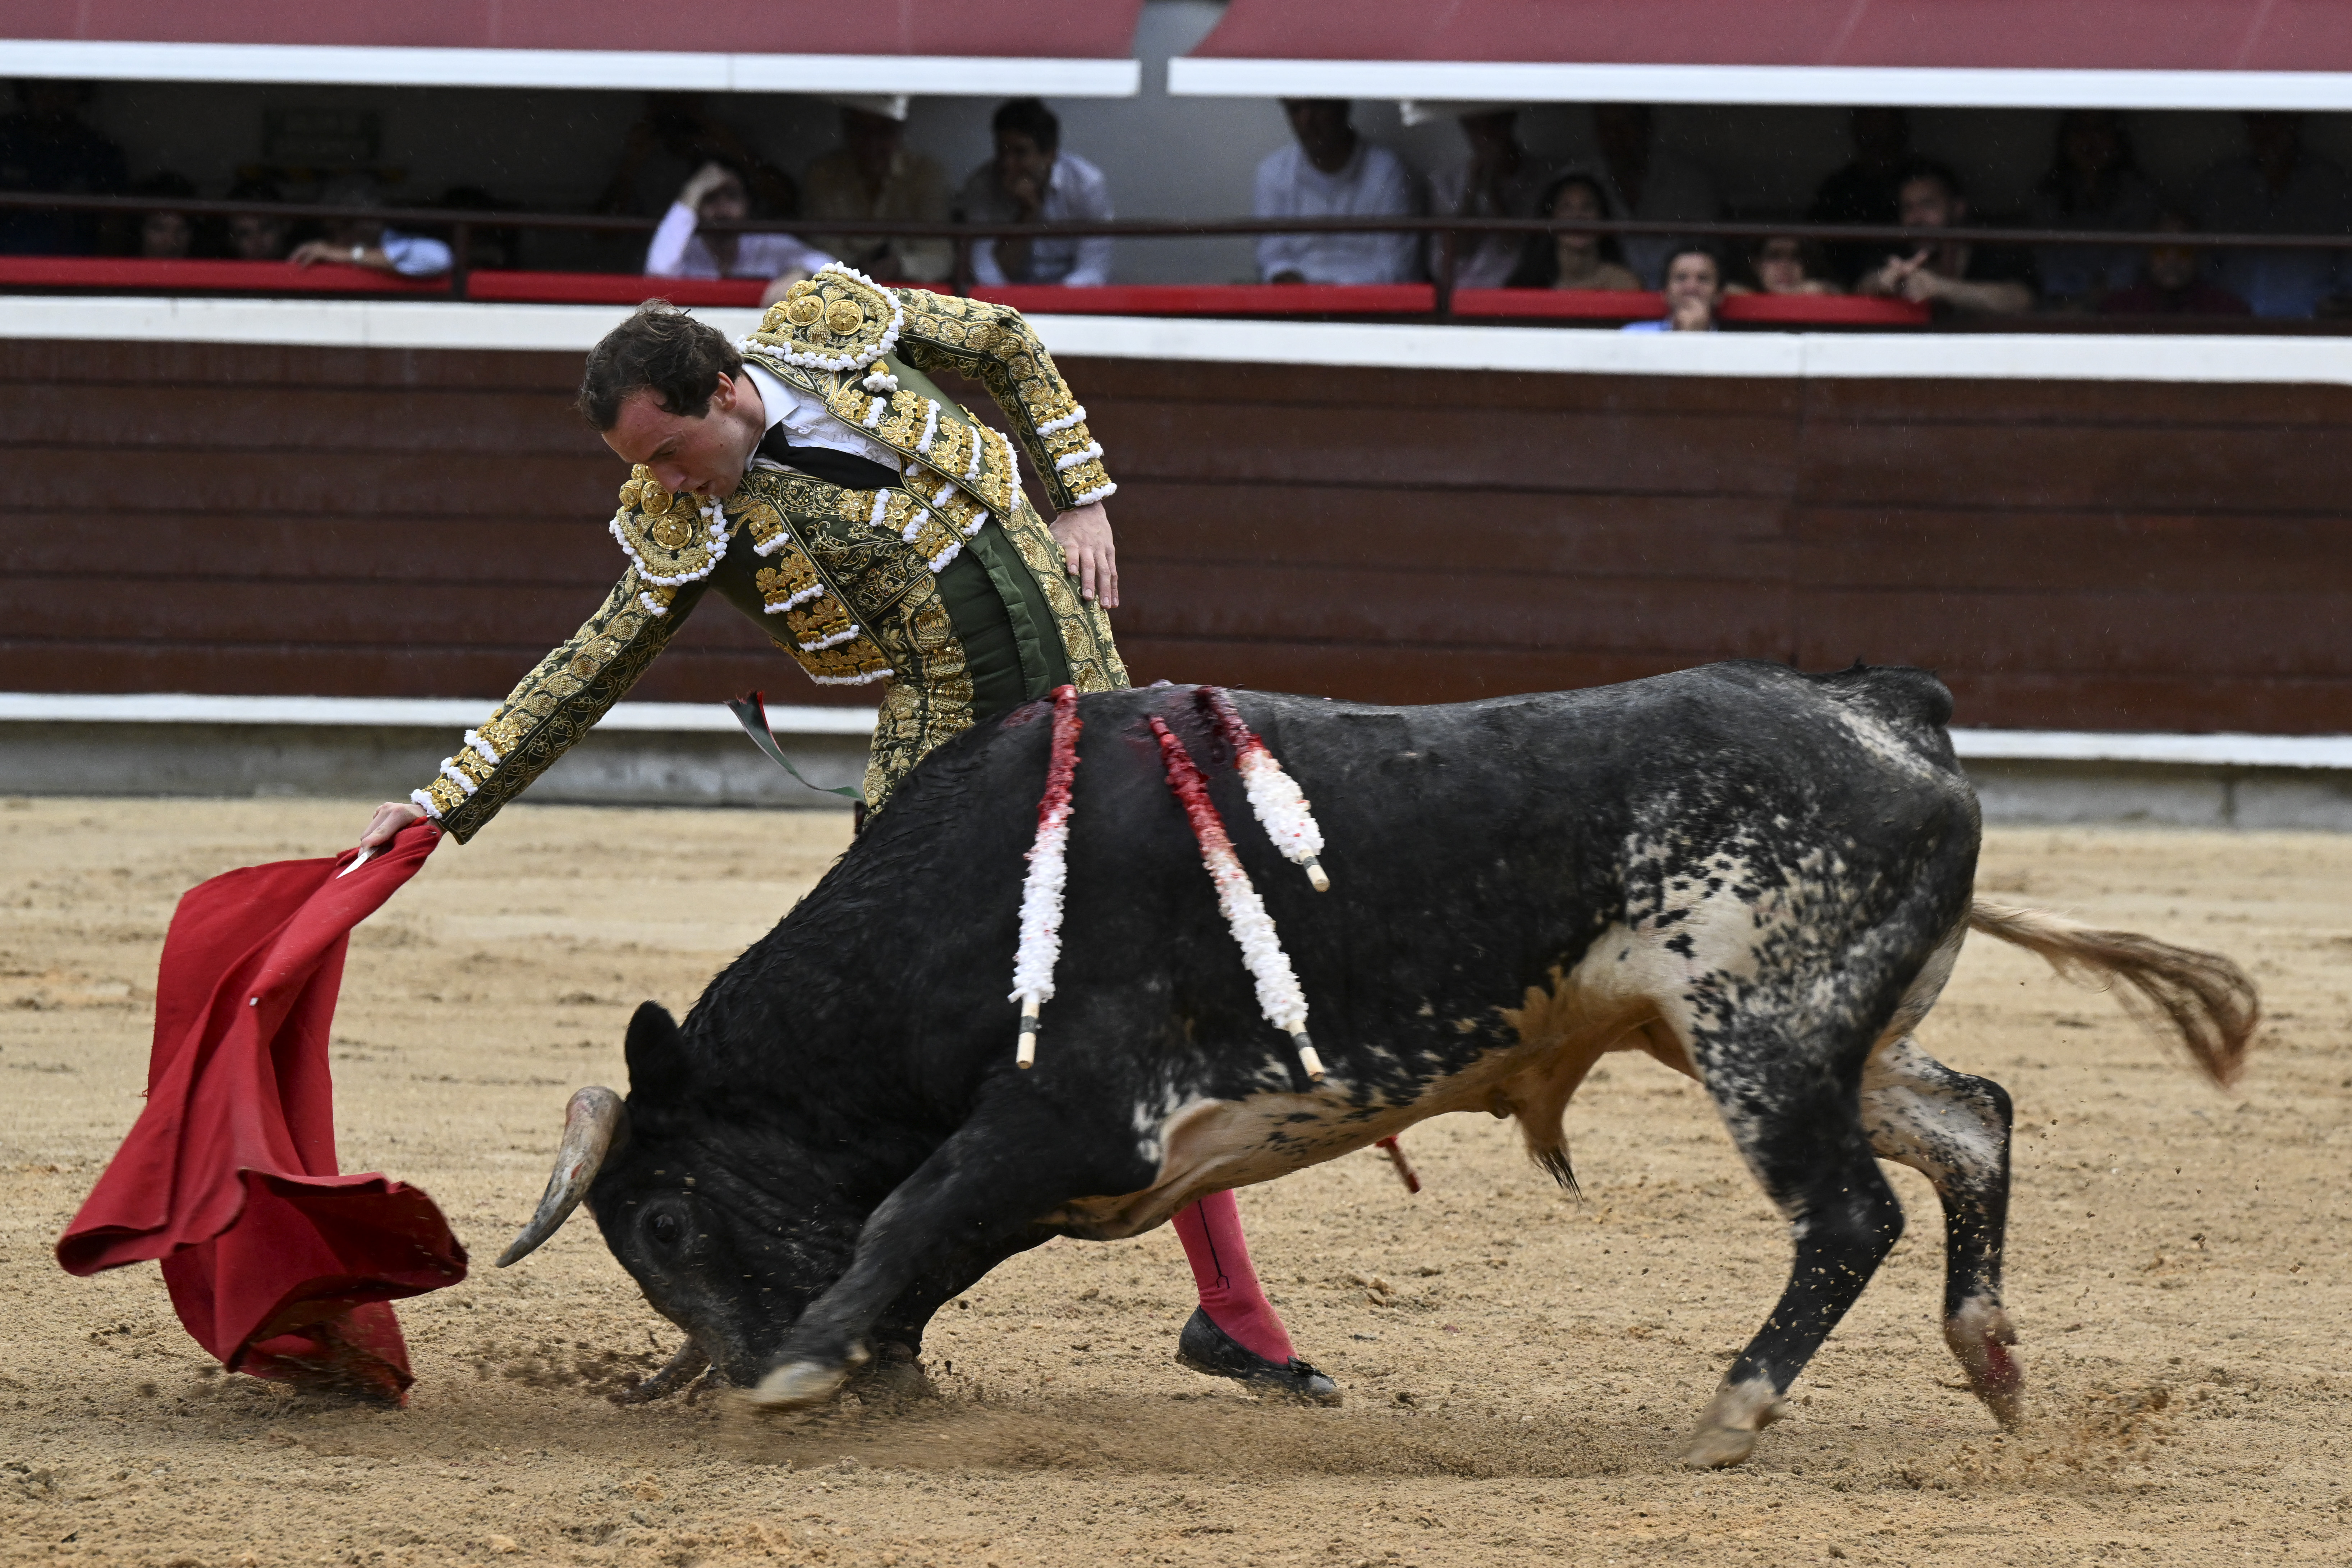 Le torero a été soigné sur place pour stabiliser ses blessures avant d’être transporté à l'hôpital de Mont-de-Marsan. AFP/ Joaquin Sarmiento